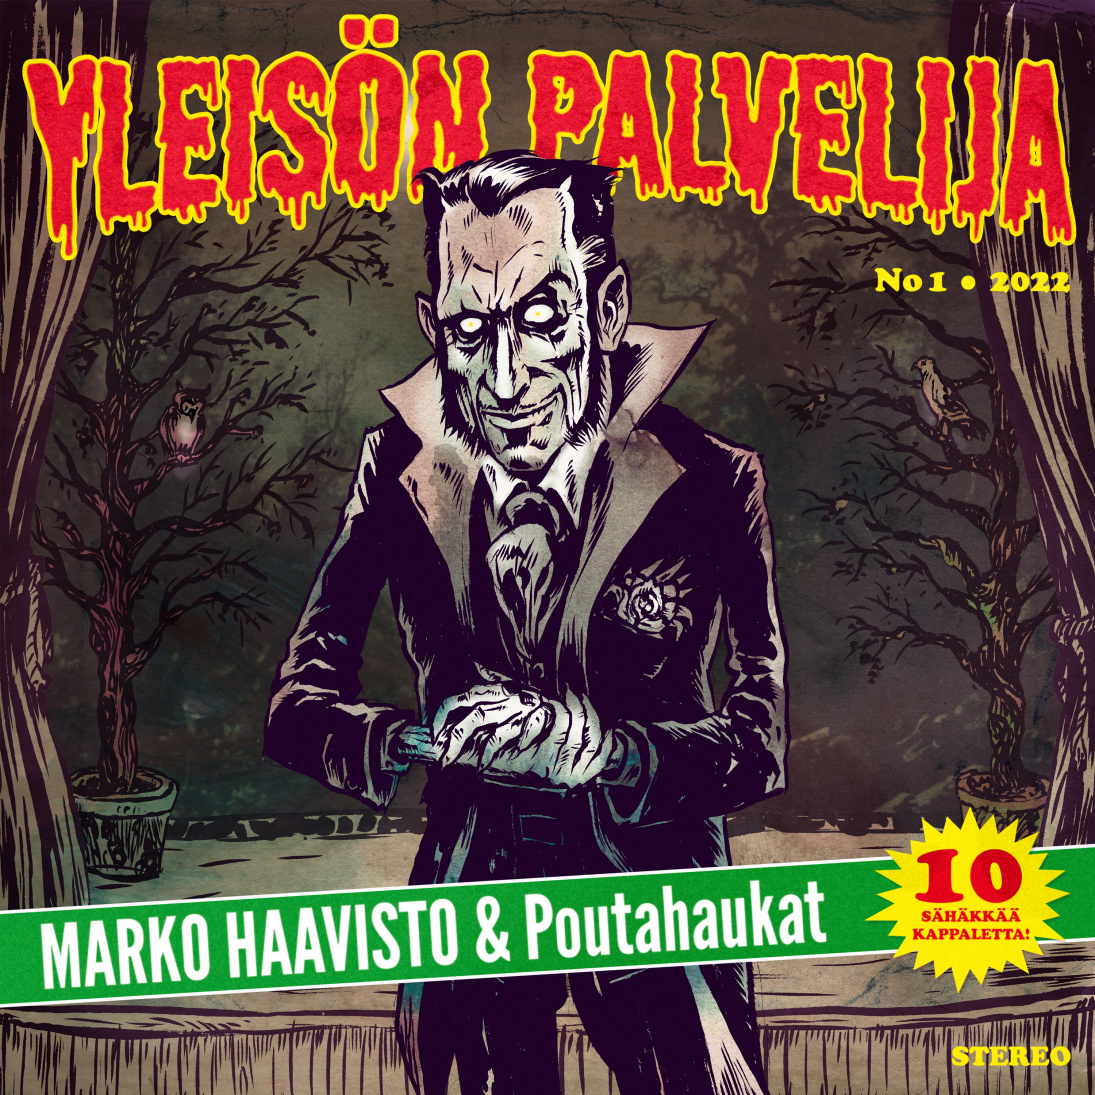 Marko Haavisto & Poutahaukat - Yleisön palvelija - CD (uusi)